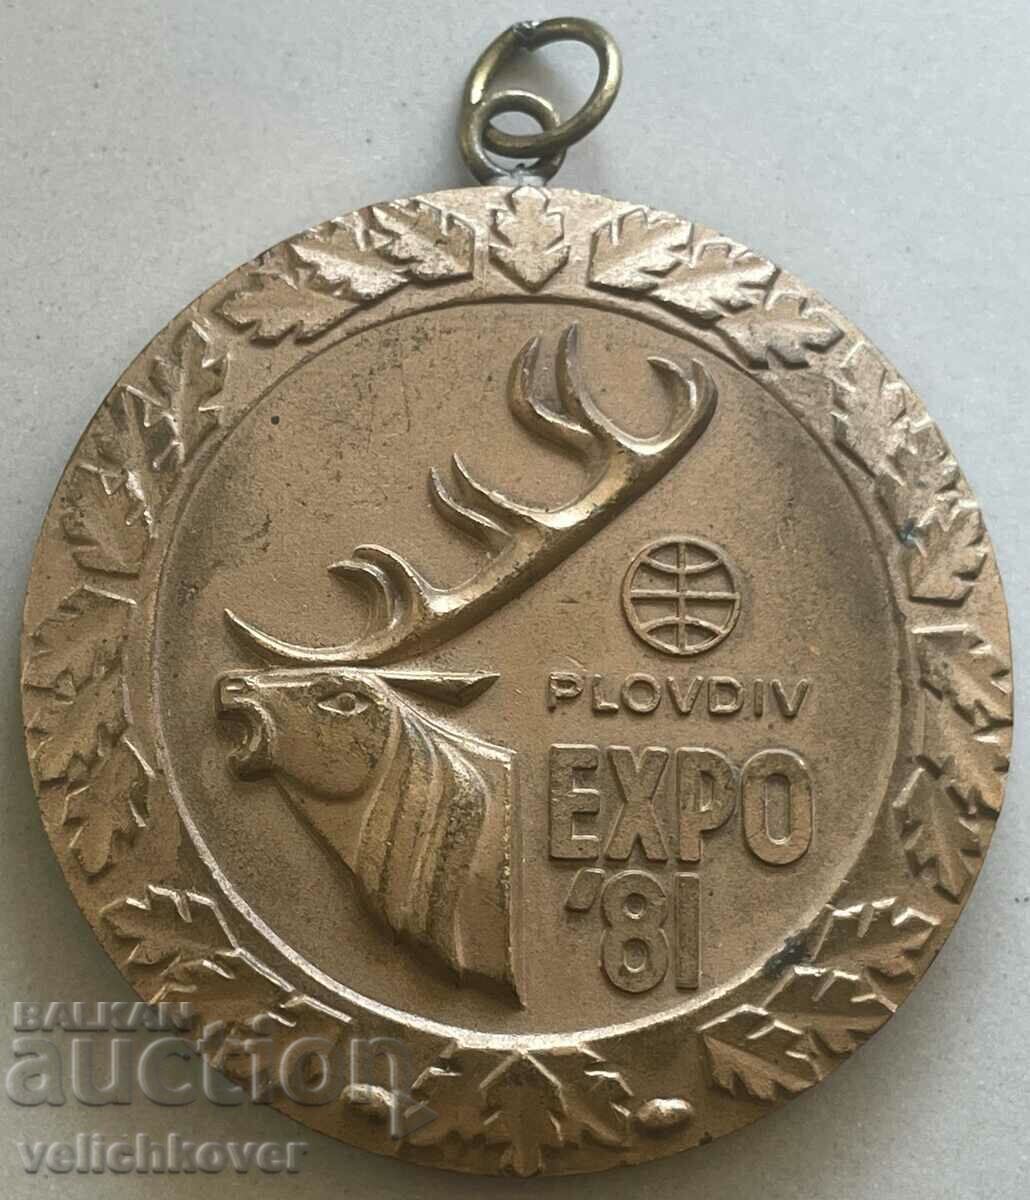 32917 Bulgaria Medalie de bronz Expoziţia Mondială de Vânătoare Plovdi